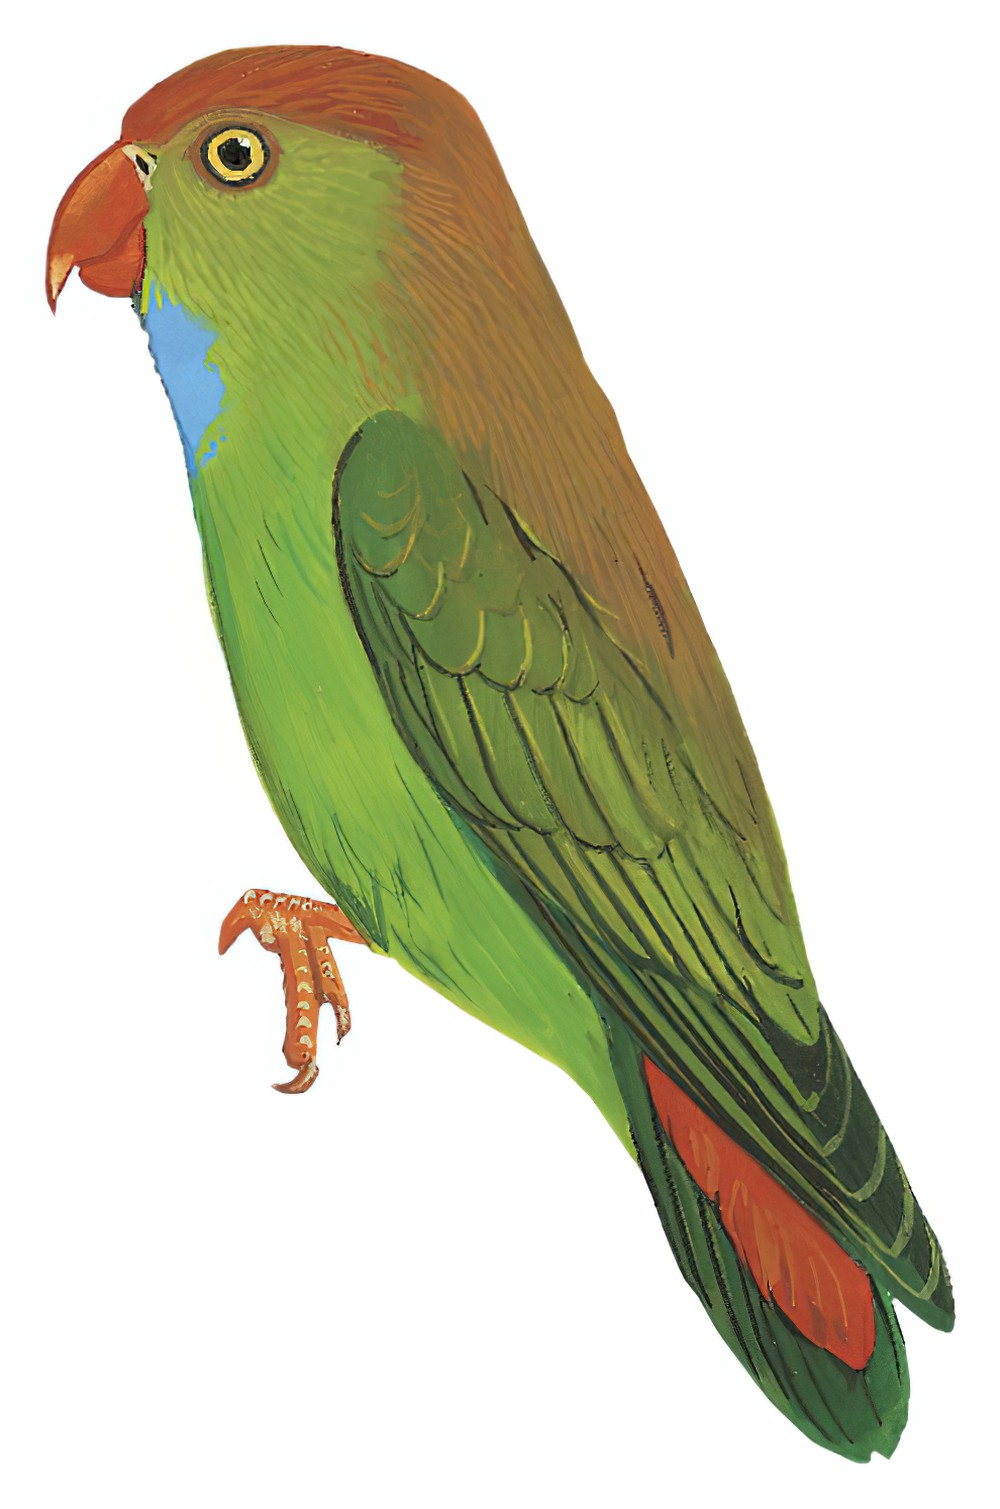 Sri Lanka Hanging-Parrot / Loriculus beryllinus